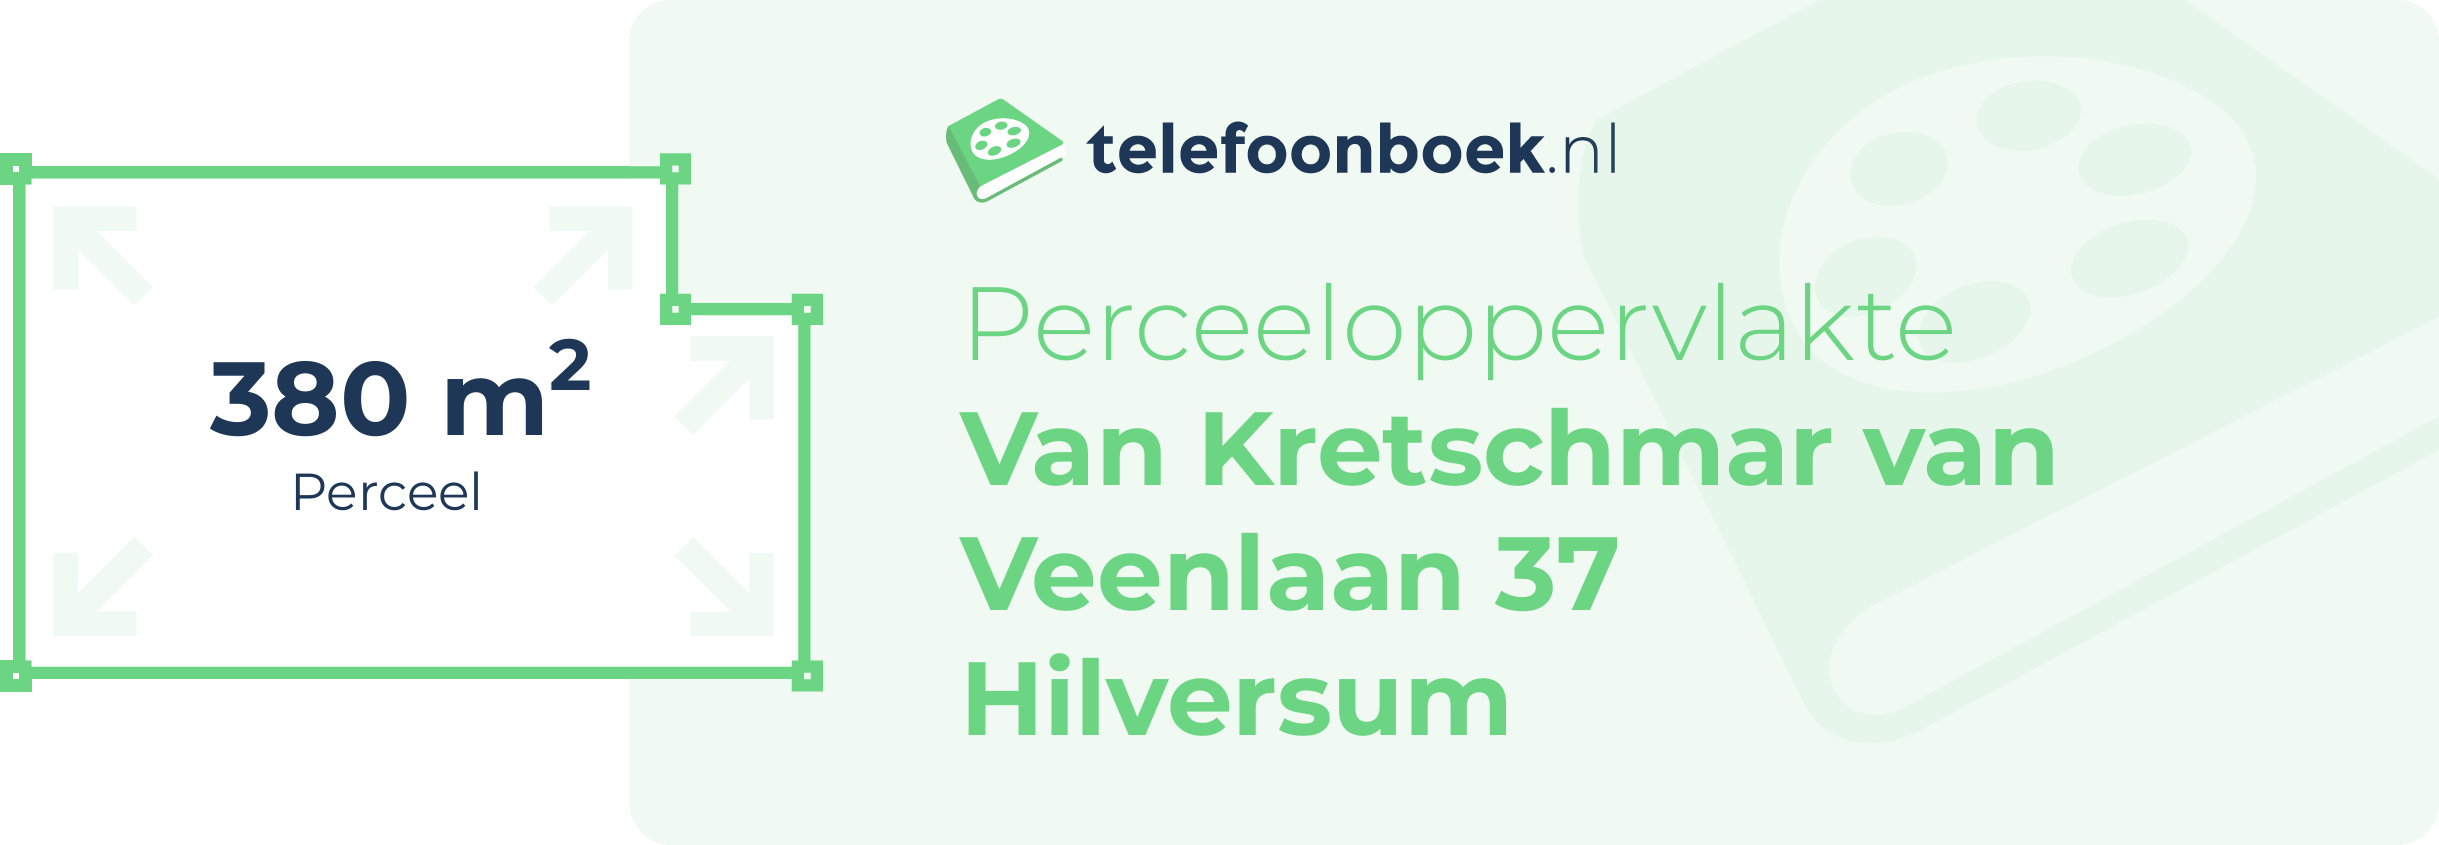 Perceeloppervlakte Van Kretschmar Van Veenlaan 37 Hilversum